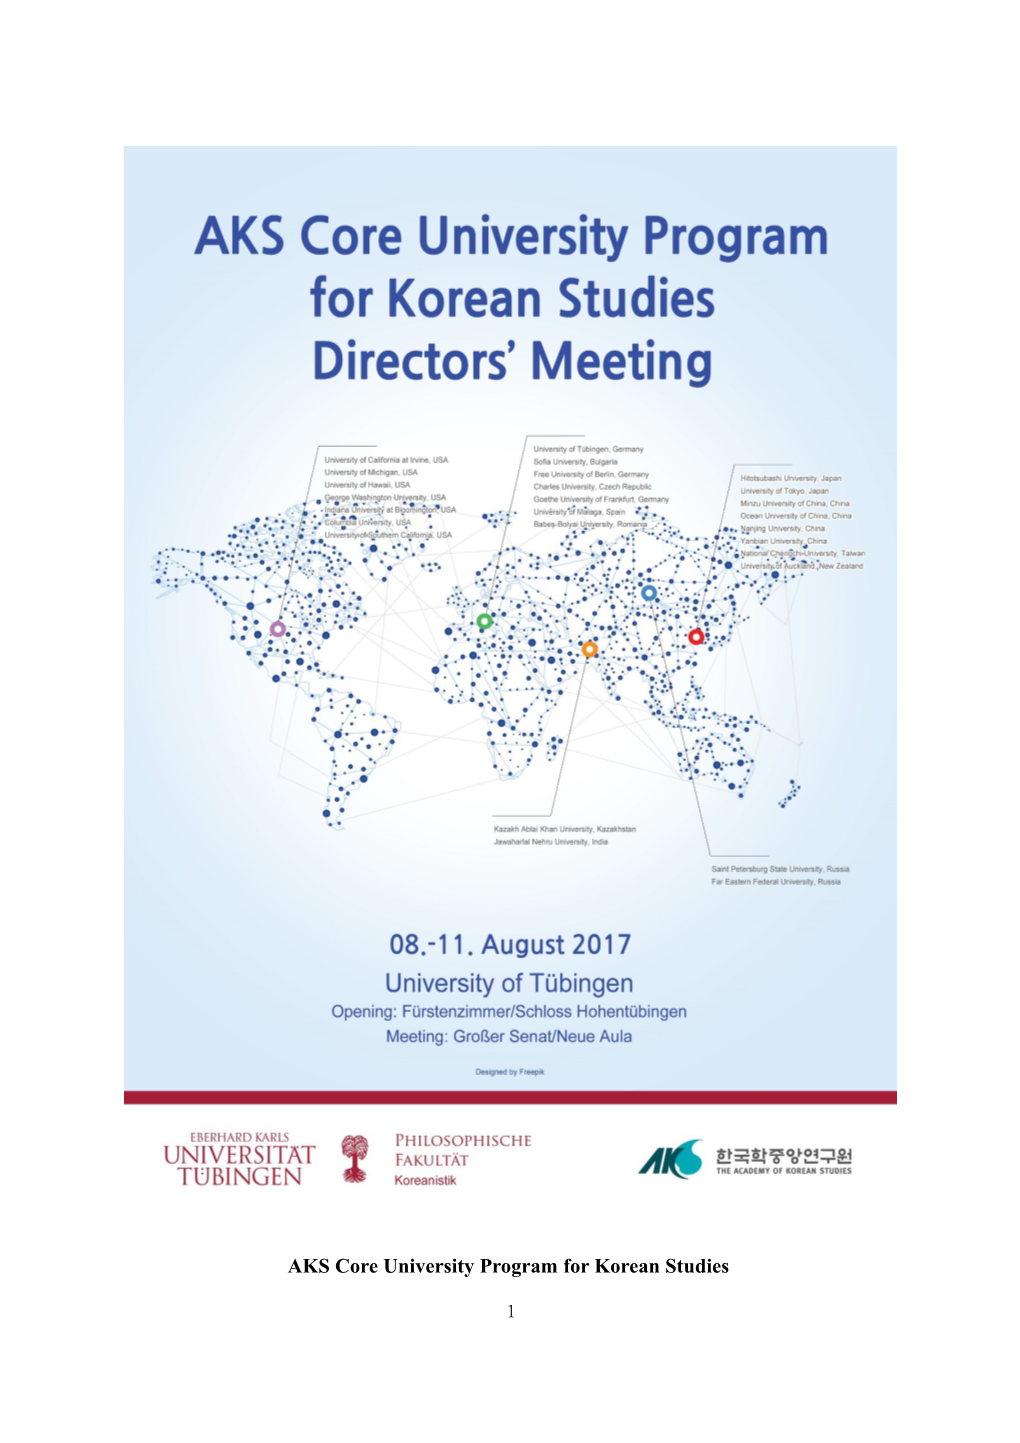 AKS Core University Program for Korean Studies